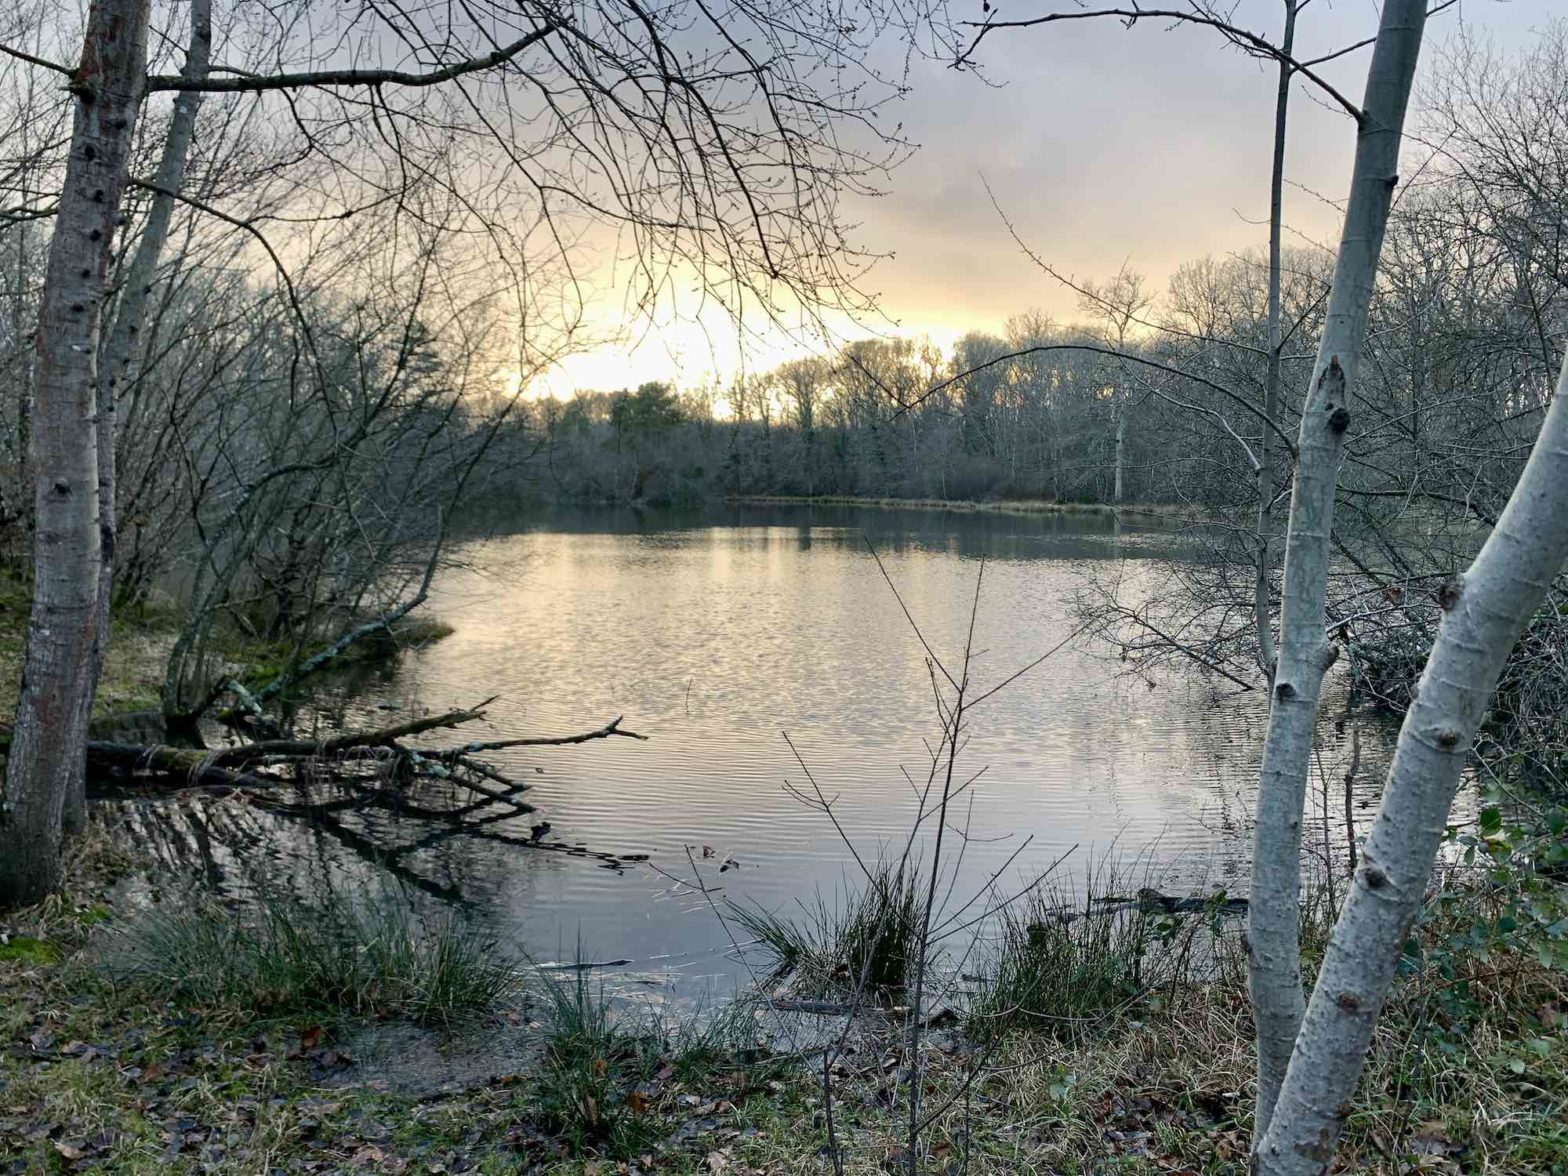 Une photo d'un lac d'hiver dans la forêt de Châteauroux, avec le soleil éclatant d'une fin d'après midi qui baigne la scène d'une lumière blanche, bleue et jaune.